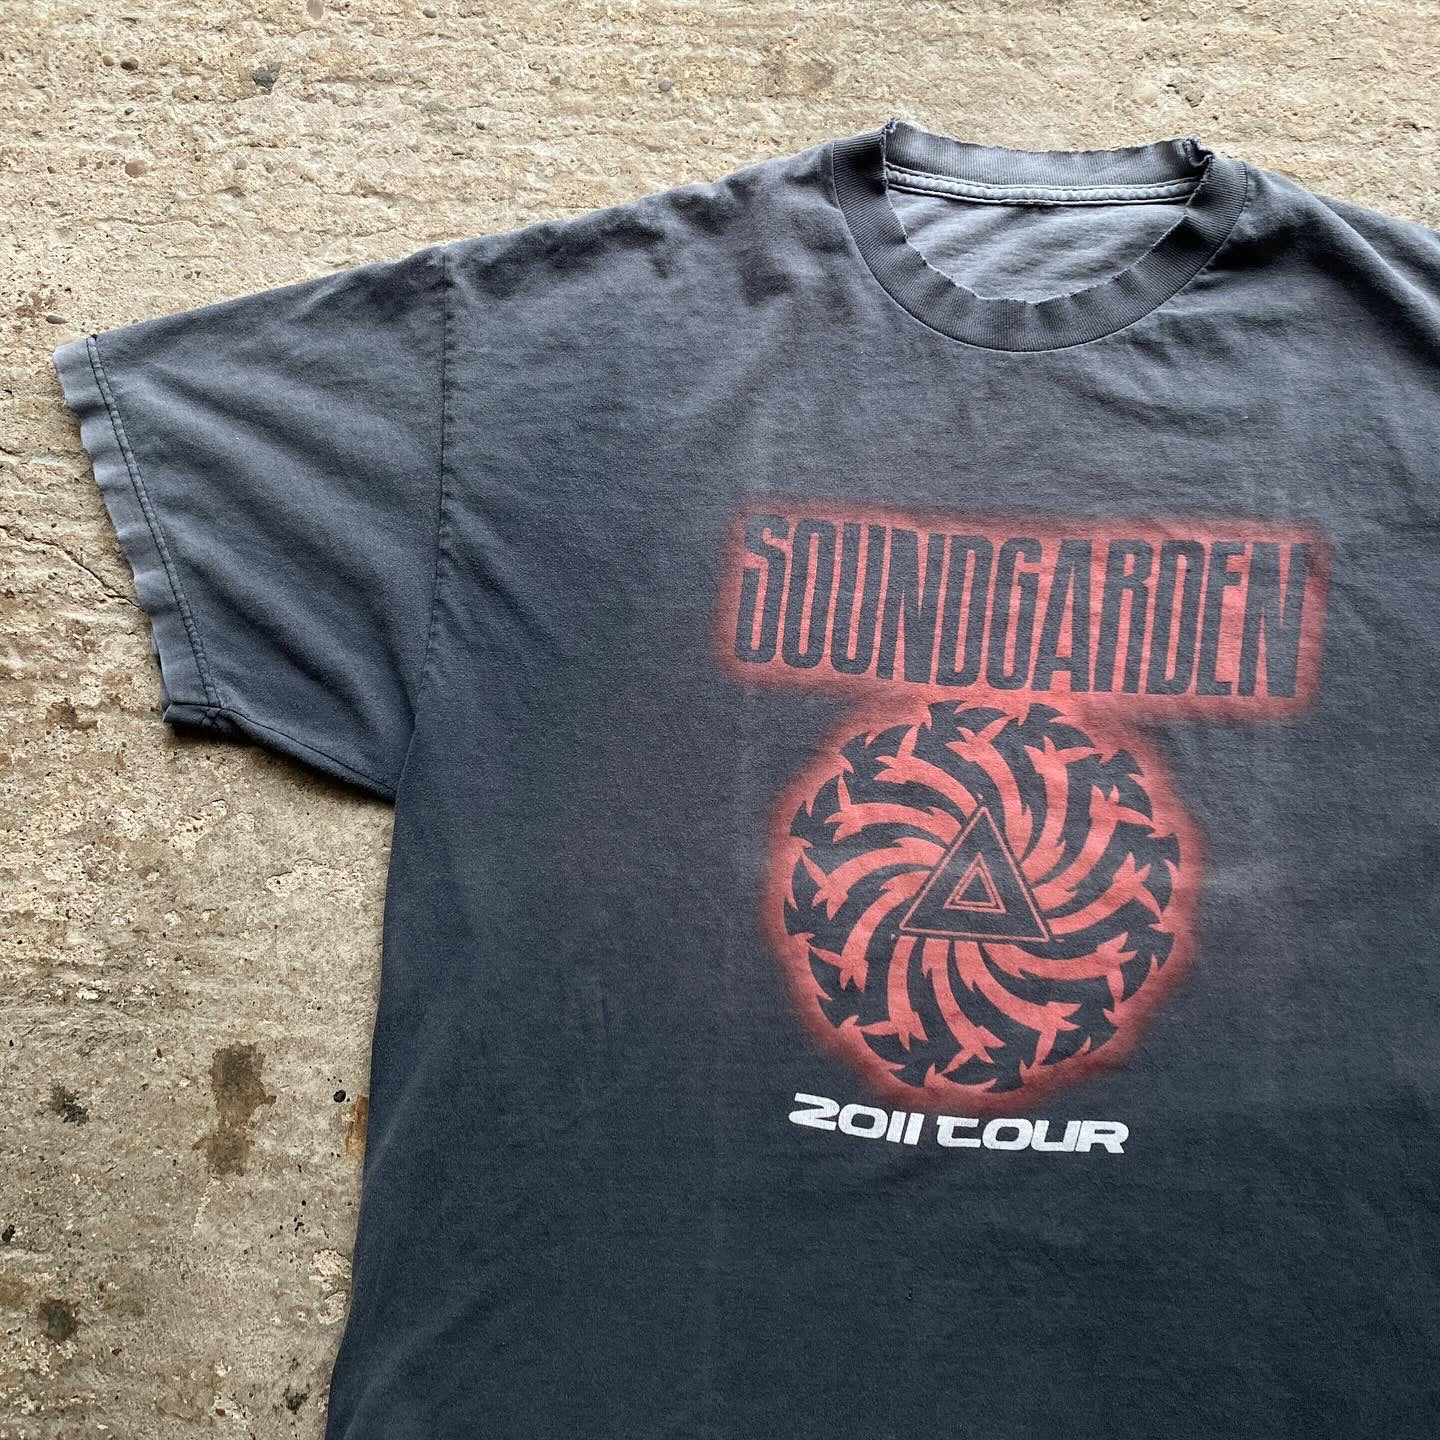 Soundgarden - 'Tour' - 2011 - XXL